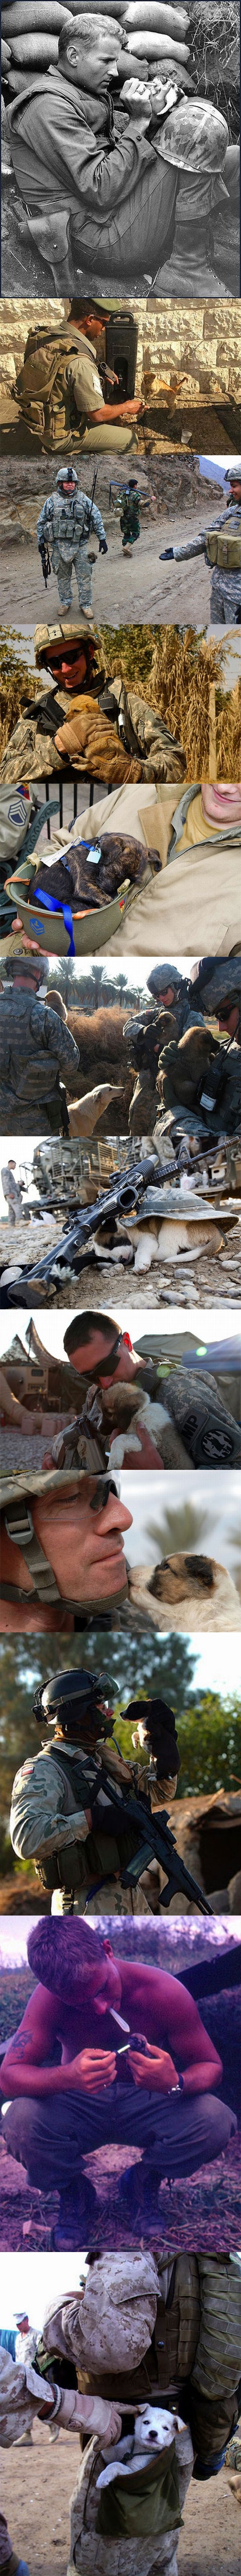 Animals in war.